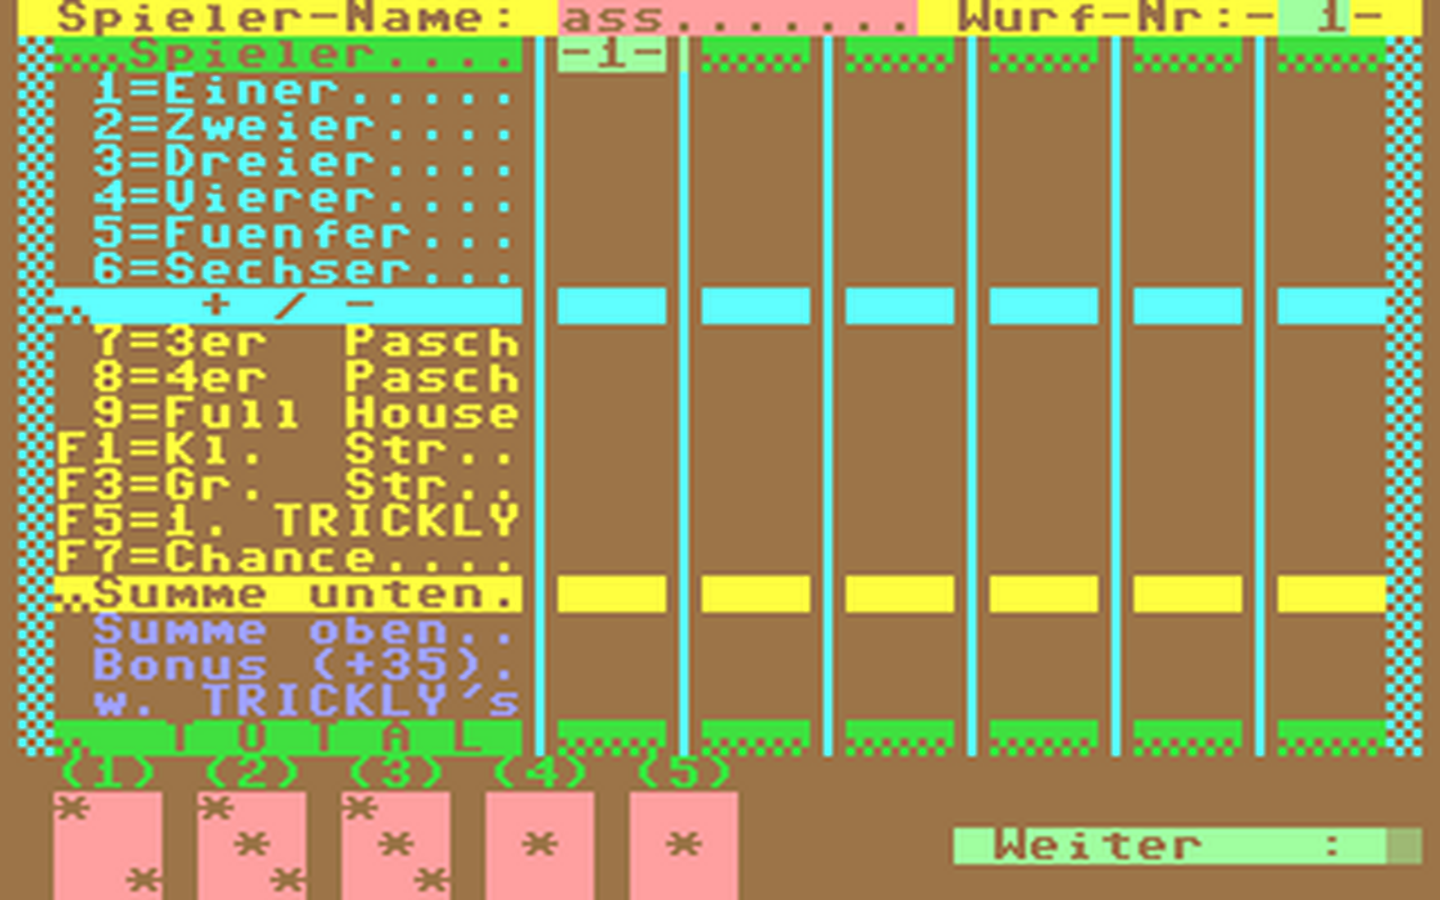 C64 GameBase Trickly Verlag_Heinz_Heise_GmbH/Input_64 1985